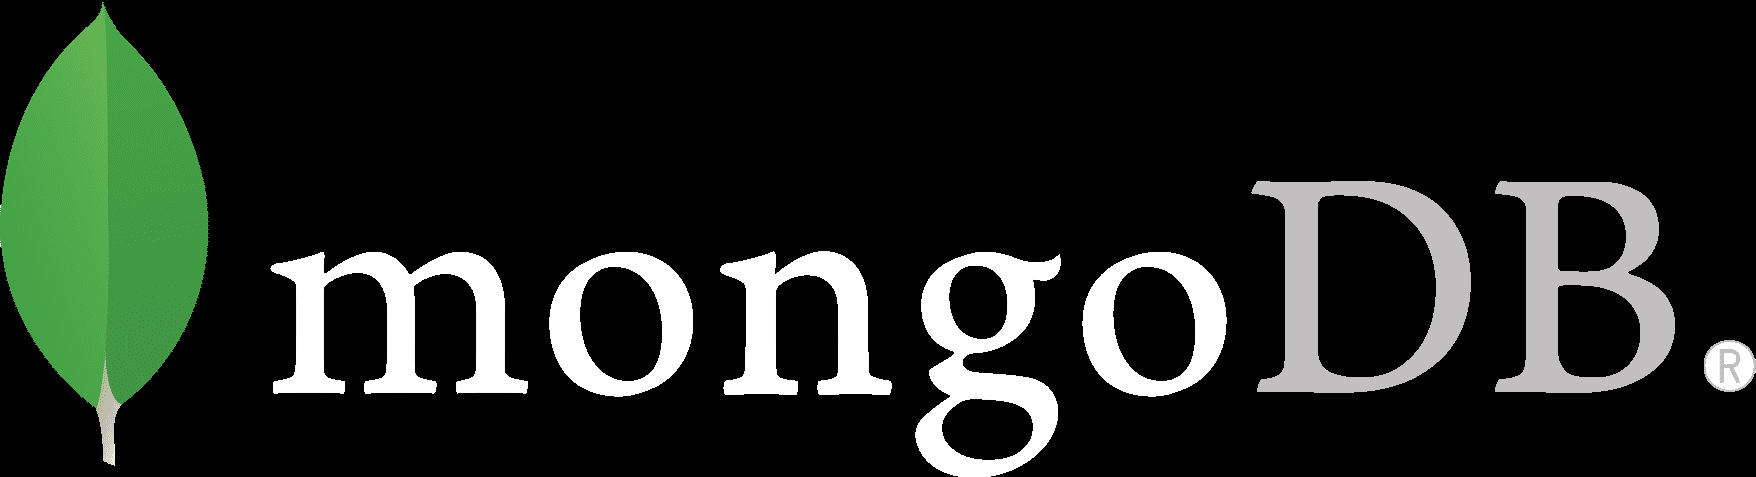 MongoDB Logo - Mongodb Logo White. Full Spectrum Database Services